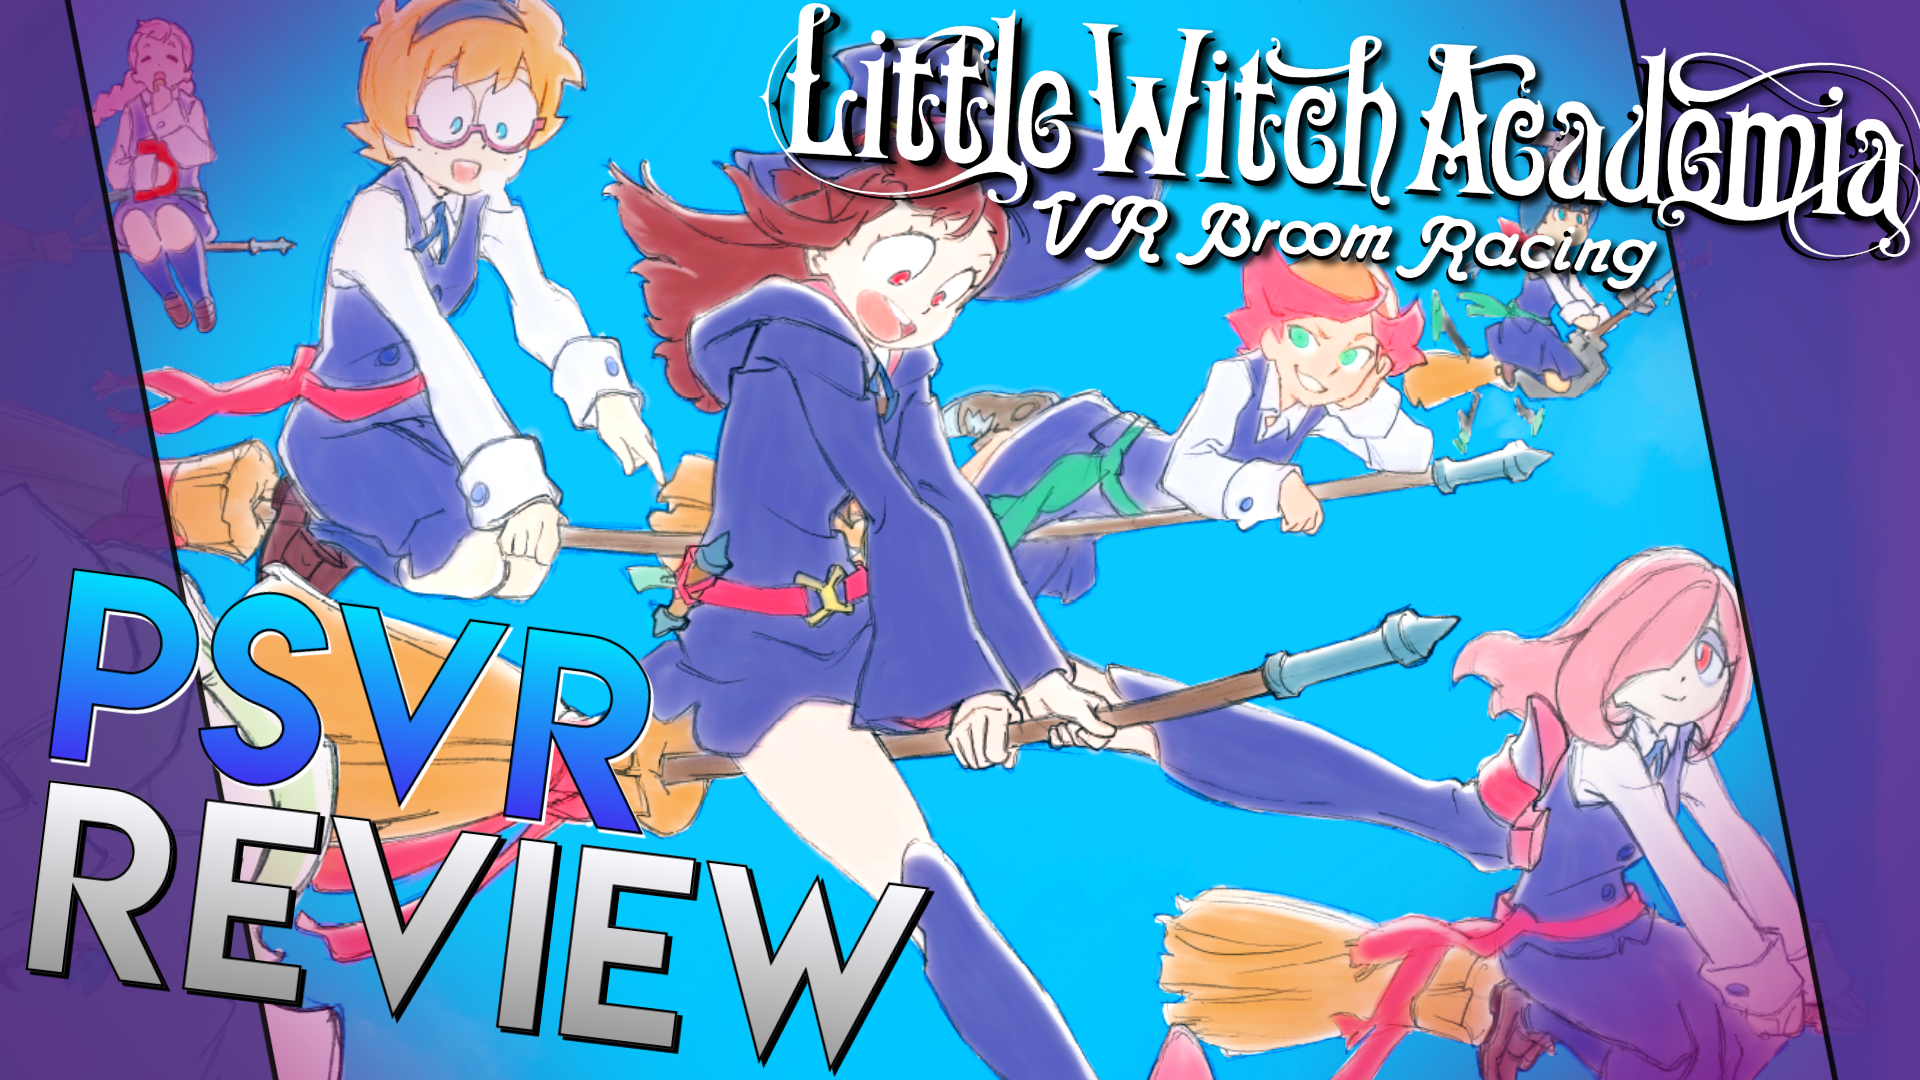 Little Witch Academia (TV) (Little Witch Academia) 